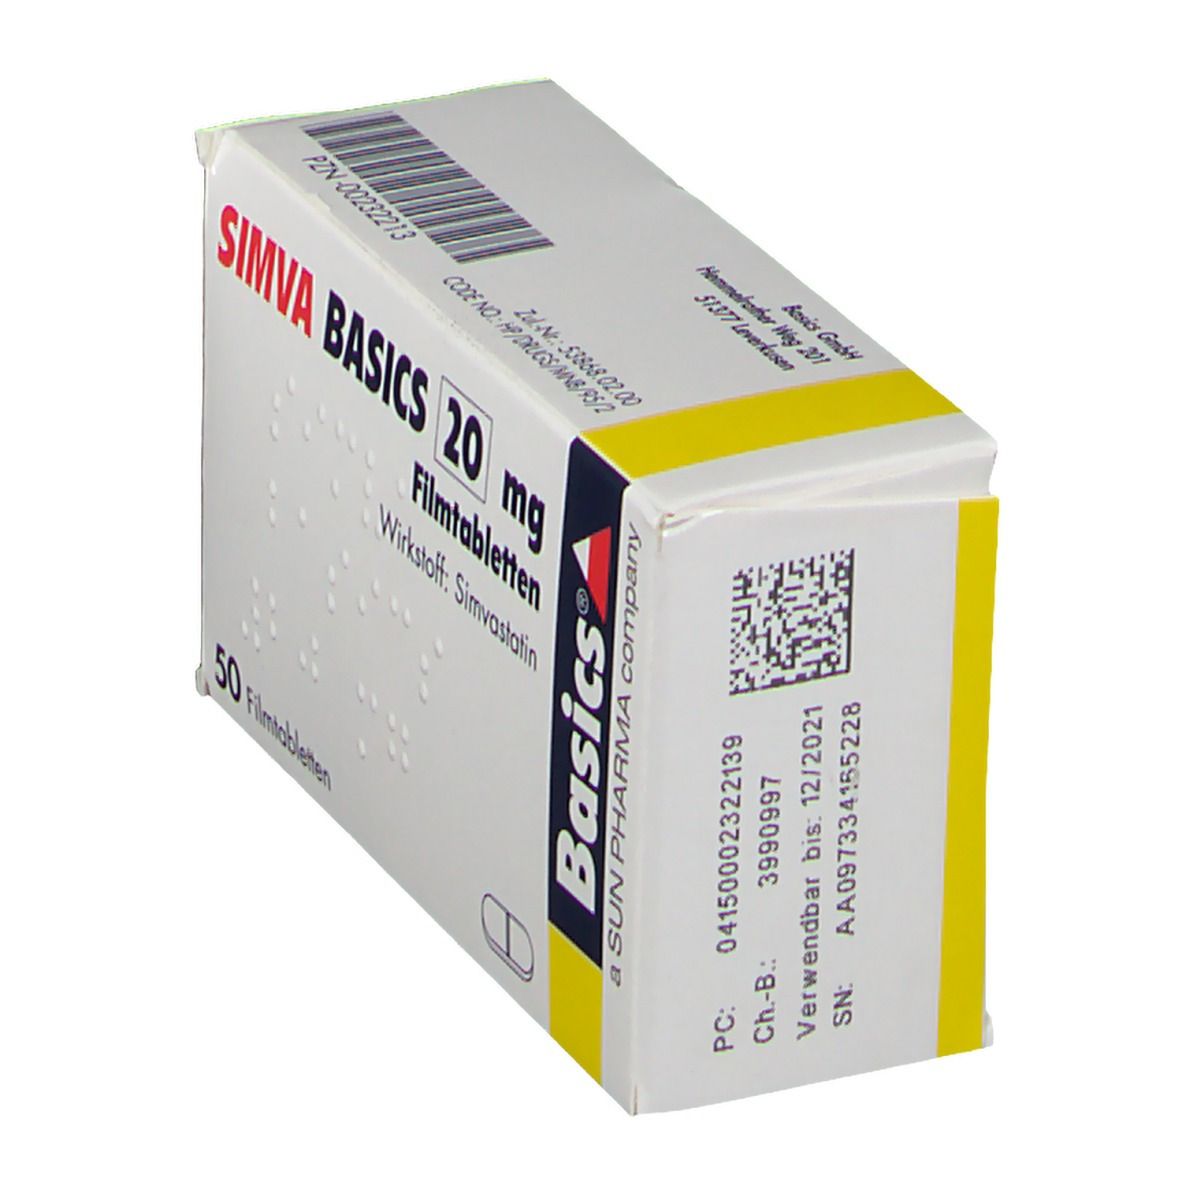 SIMVA BASICS 20 mg